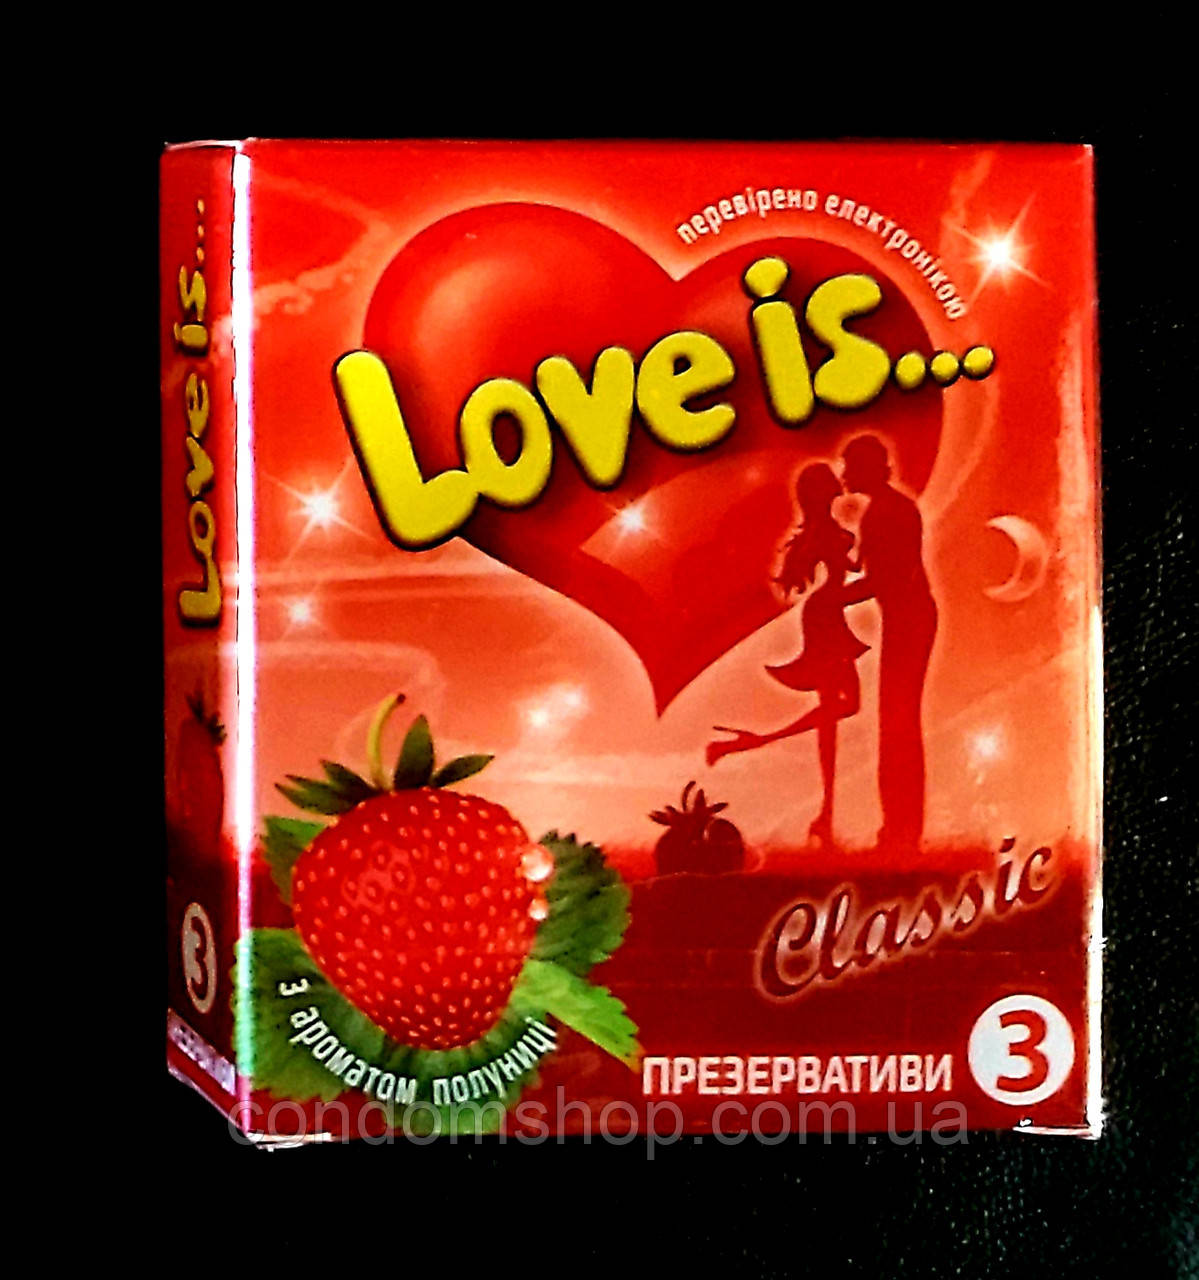 Презервативи LOVE IS преміум із КЛУБНИКОМ і коміксом-вкладкою, 3 шт. Великобританії.Преміумклас!